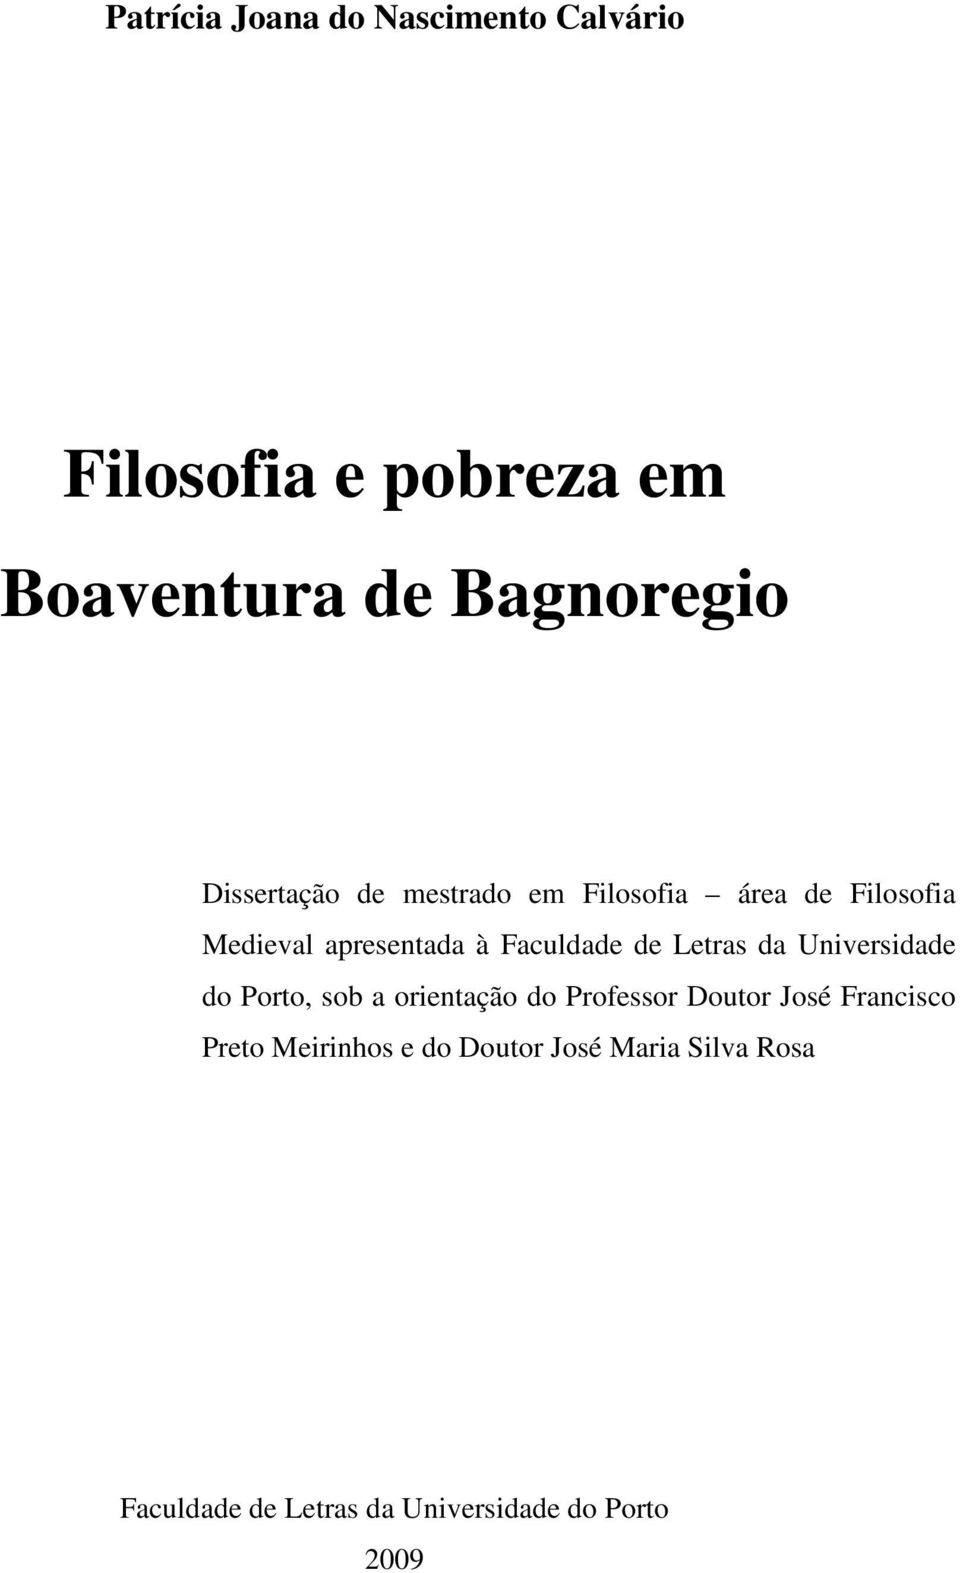 Letras da Universidade do Porto, sob a orientação do Professor Doutor José Francisco Preto